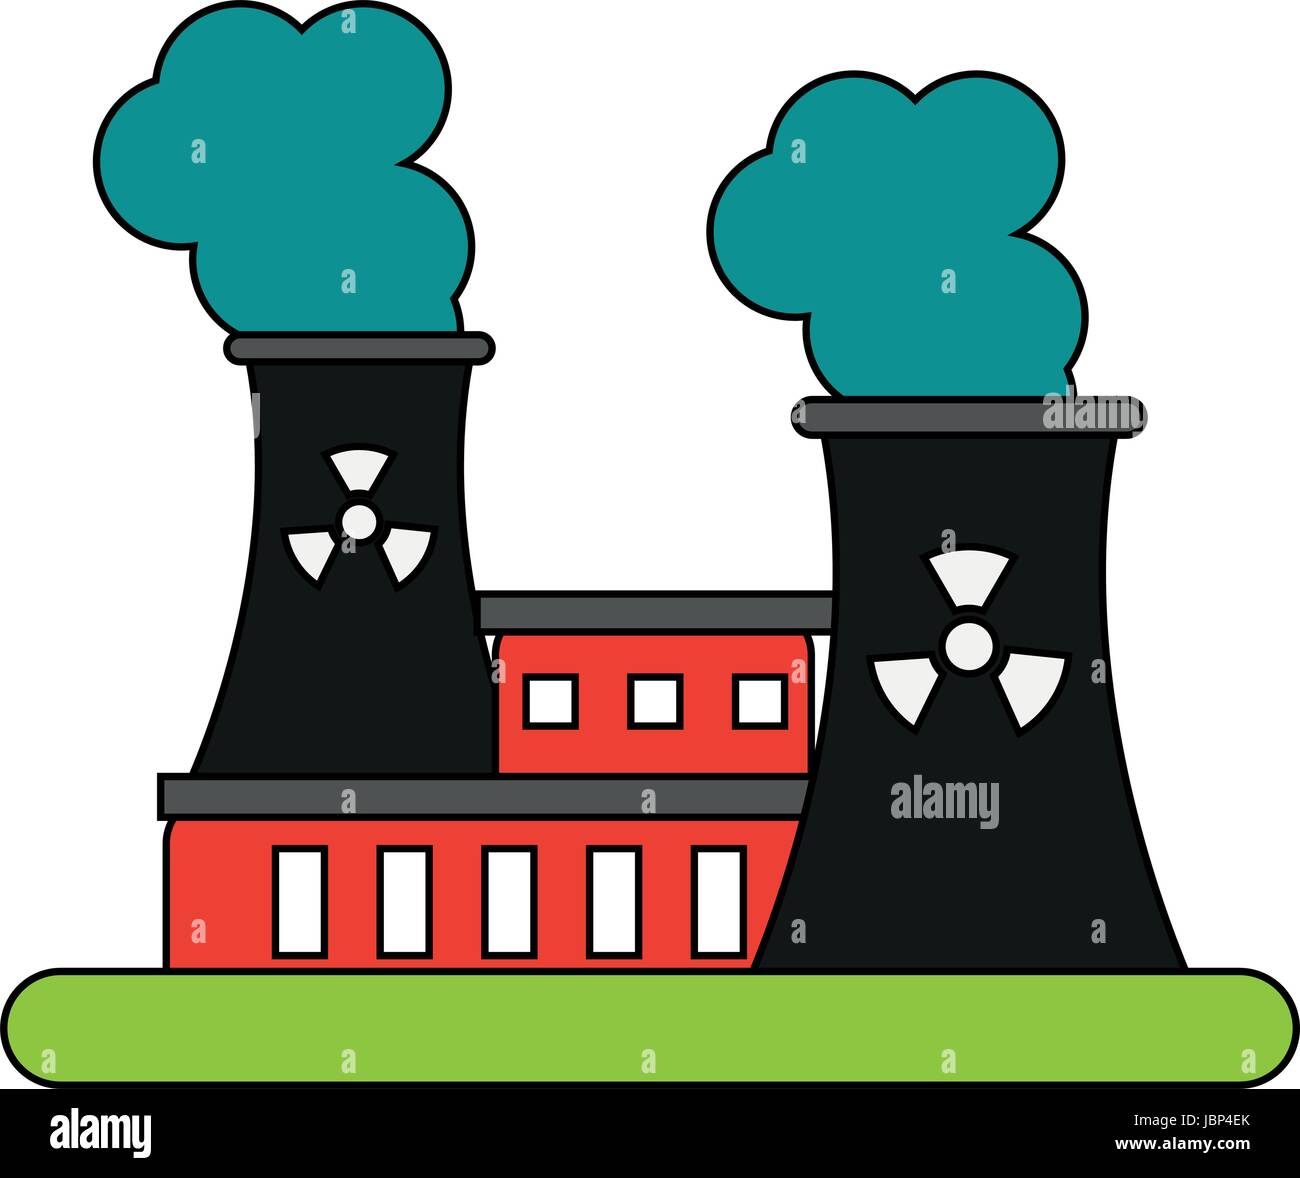 Ilustración de fábrica plana de dibujos animados Imagen Vector de stock -  Alamy